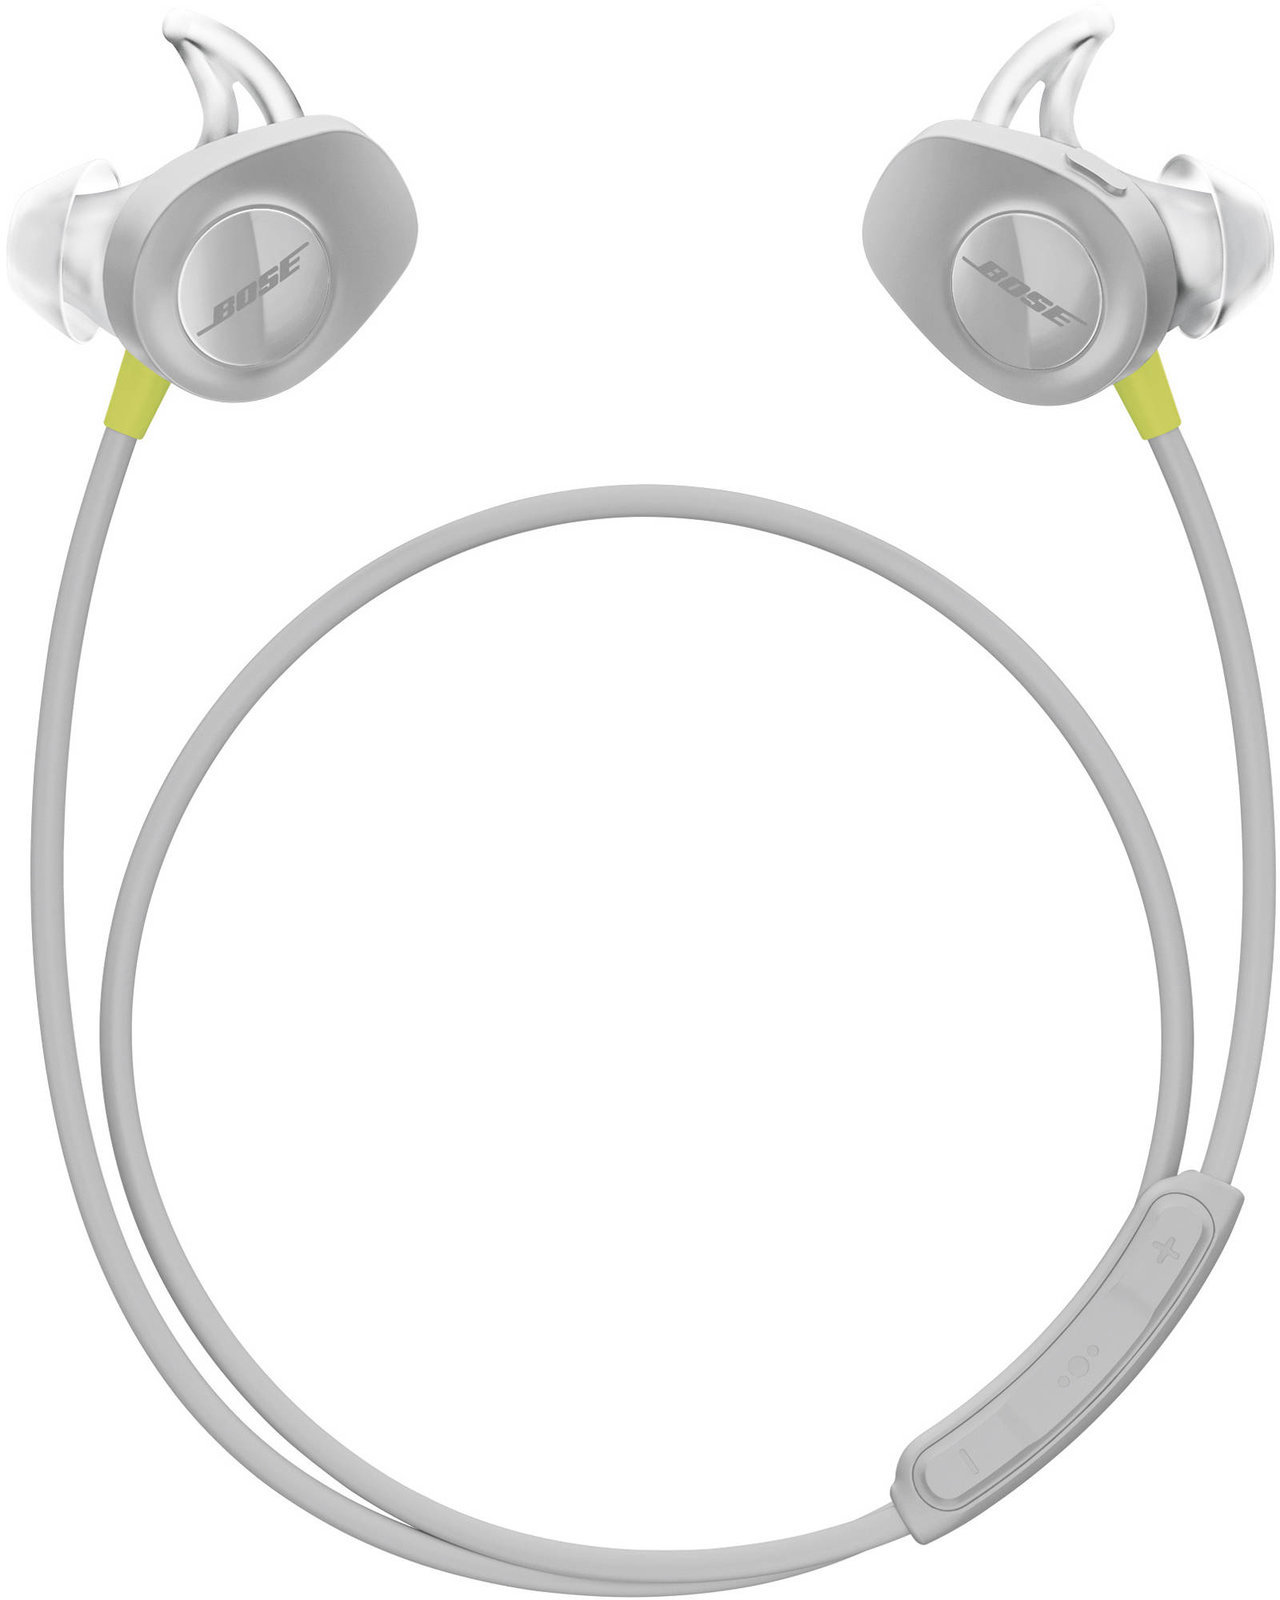 Drahtlose In-Ear-Kopfhörer Bose SoundSport Wireless in-ear headphones Lemon